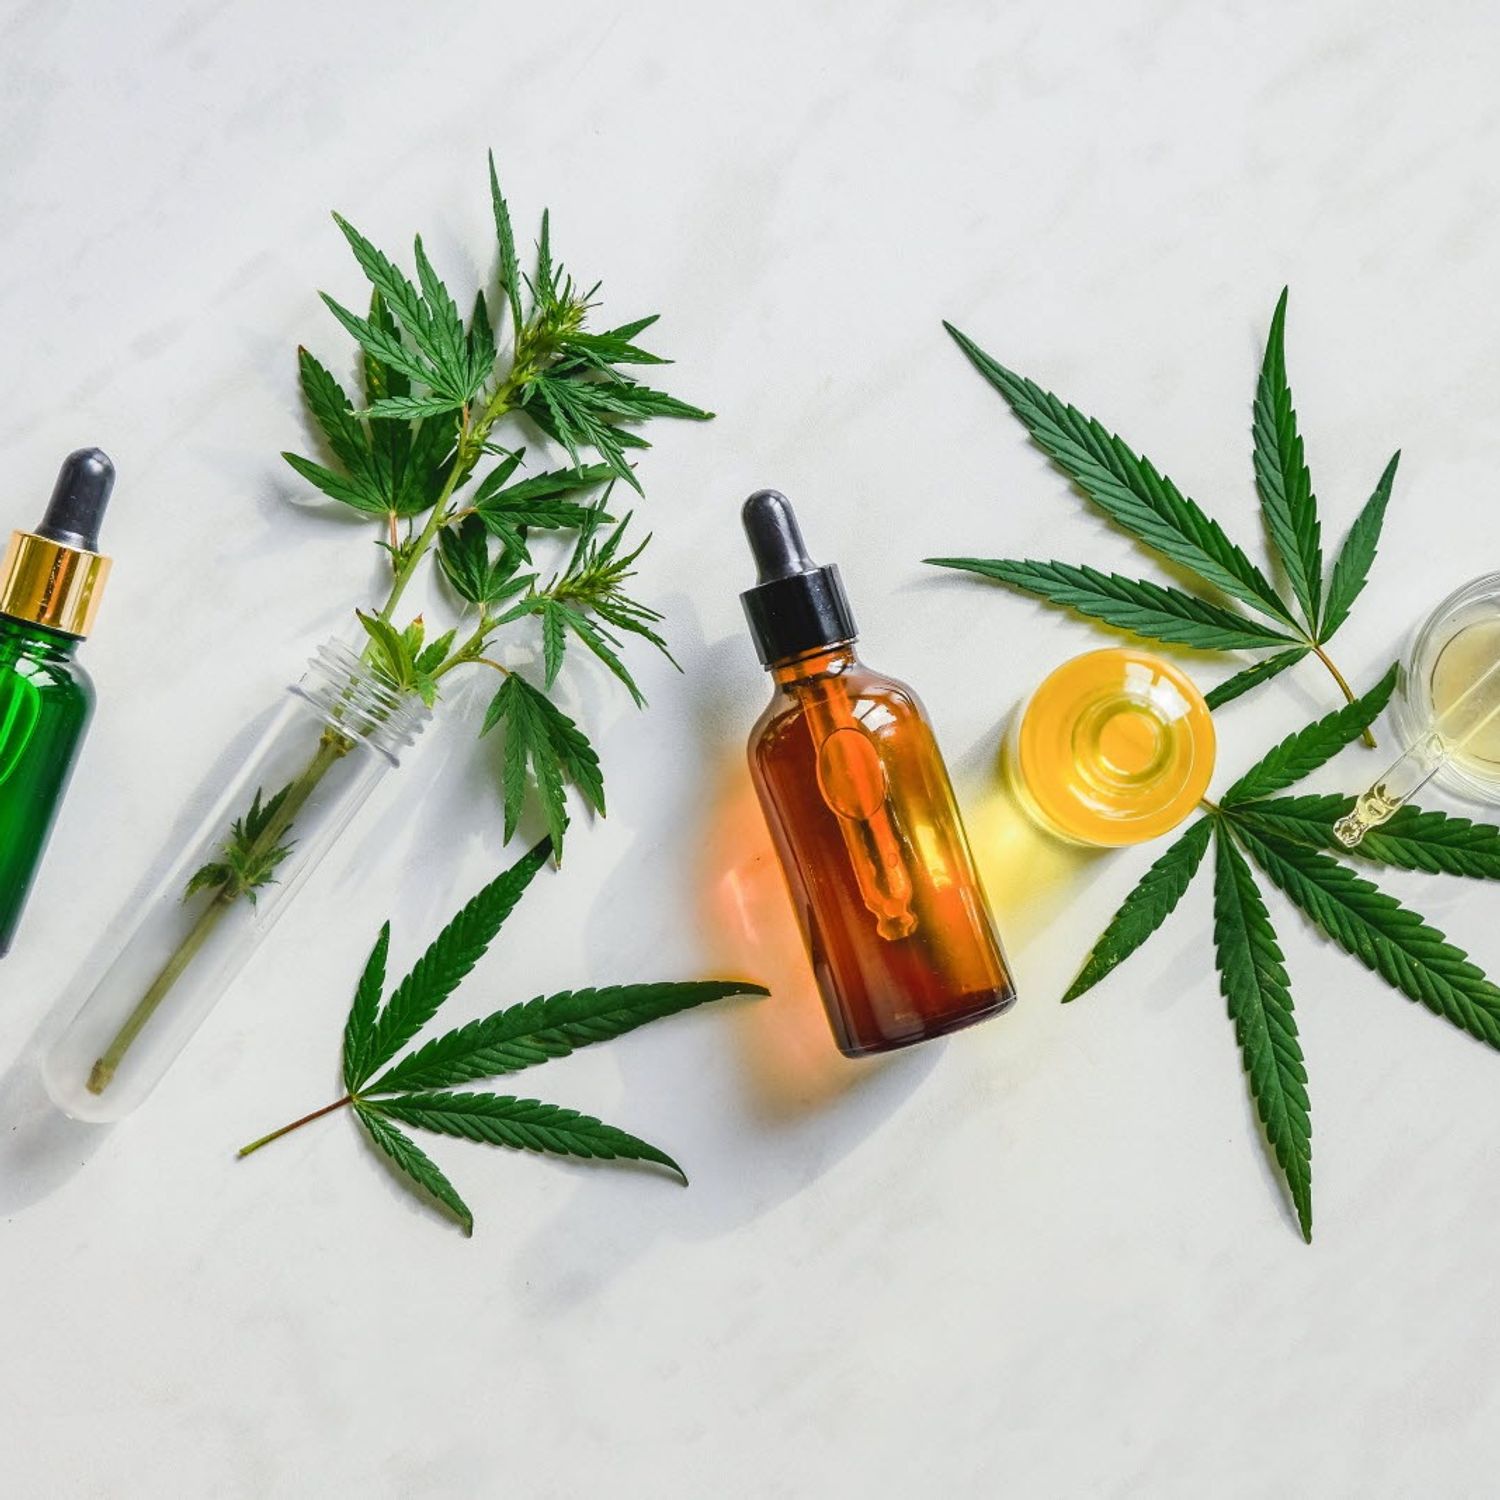 Le cannabis, un remède contre la Covid-19 ?